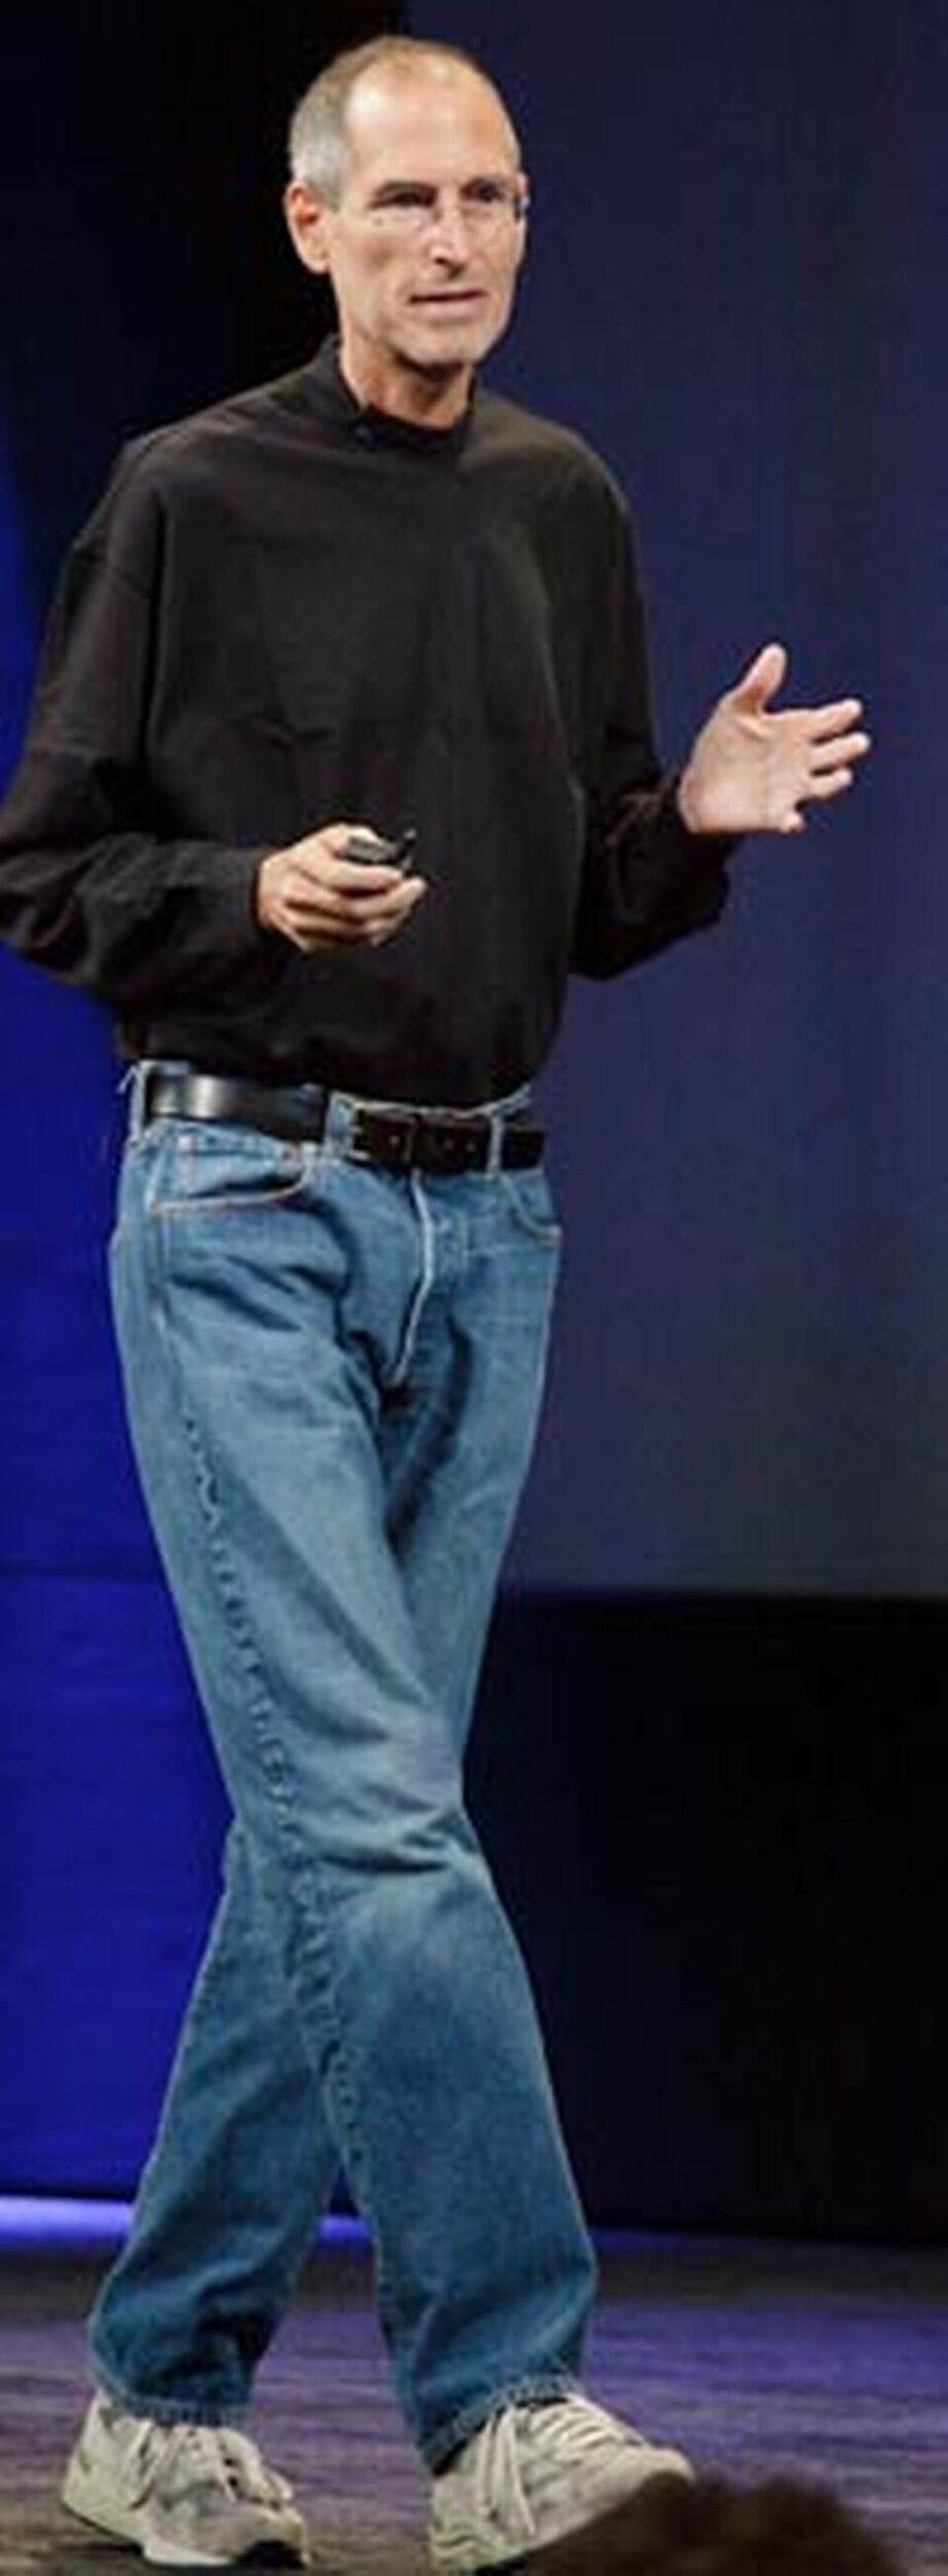 Steve Jobs är tillbaka på scenen efter sjukdom och levertransplantation.